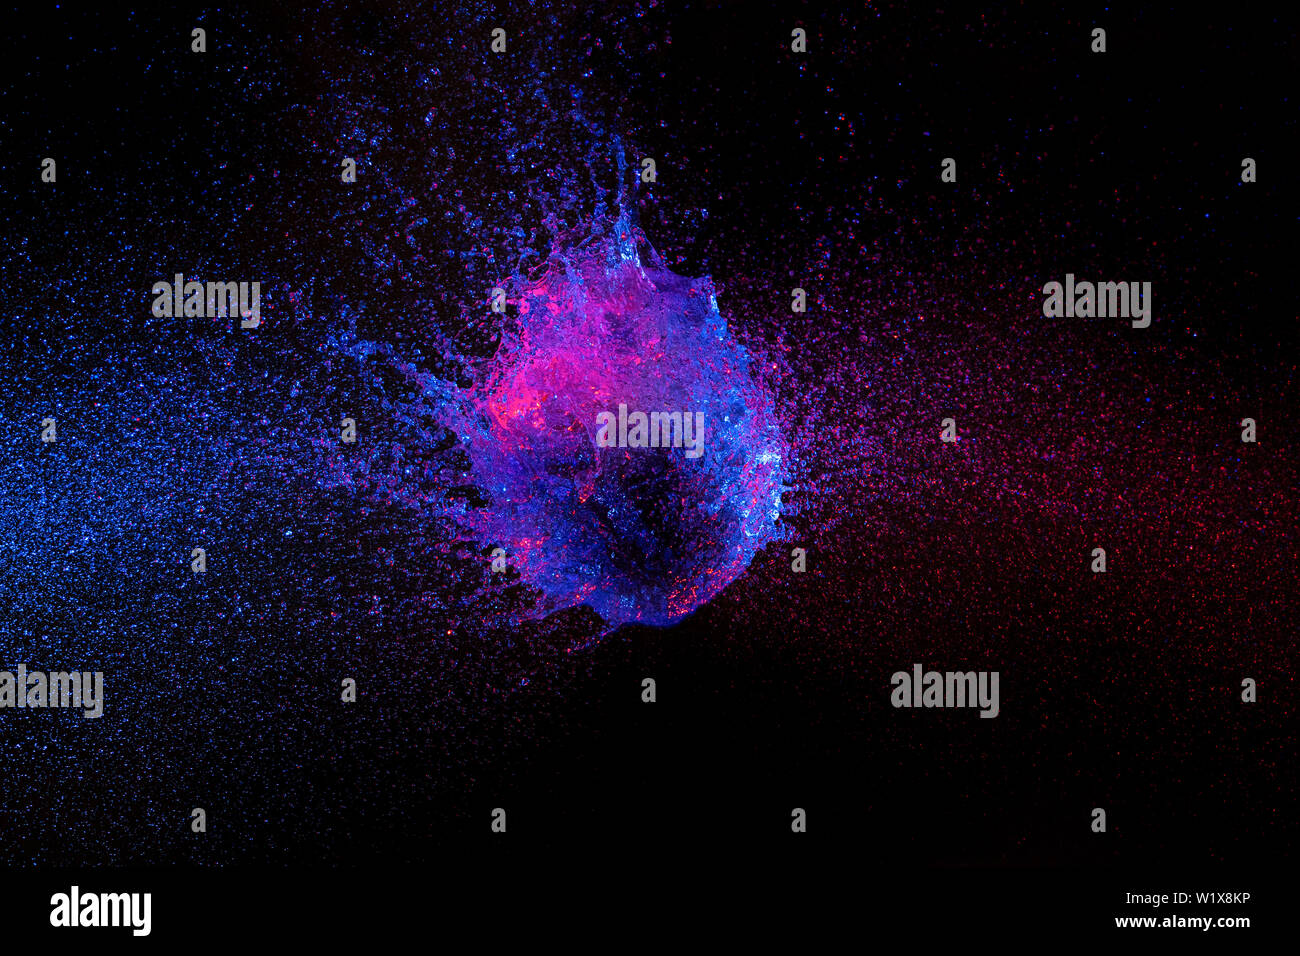 La fotografía de alta velocidad. El globo lleno de agua fotografiado en el instante exacto del impacto y romper. azul y púrpura, luces de fondo negro. Foto de stock